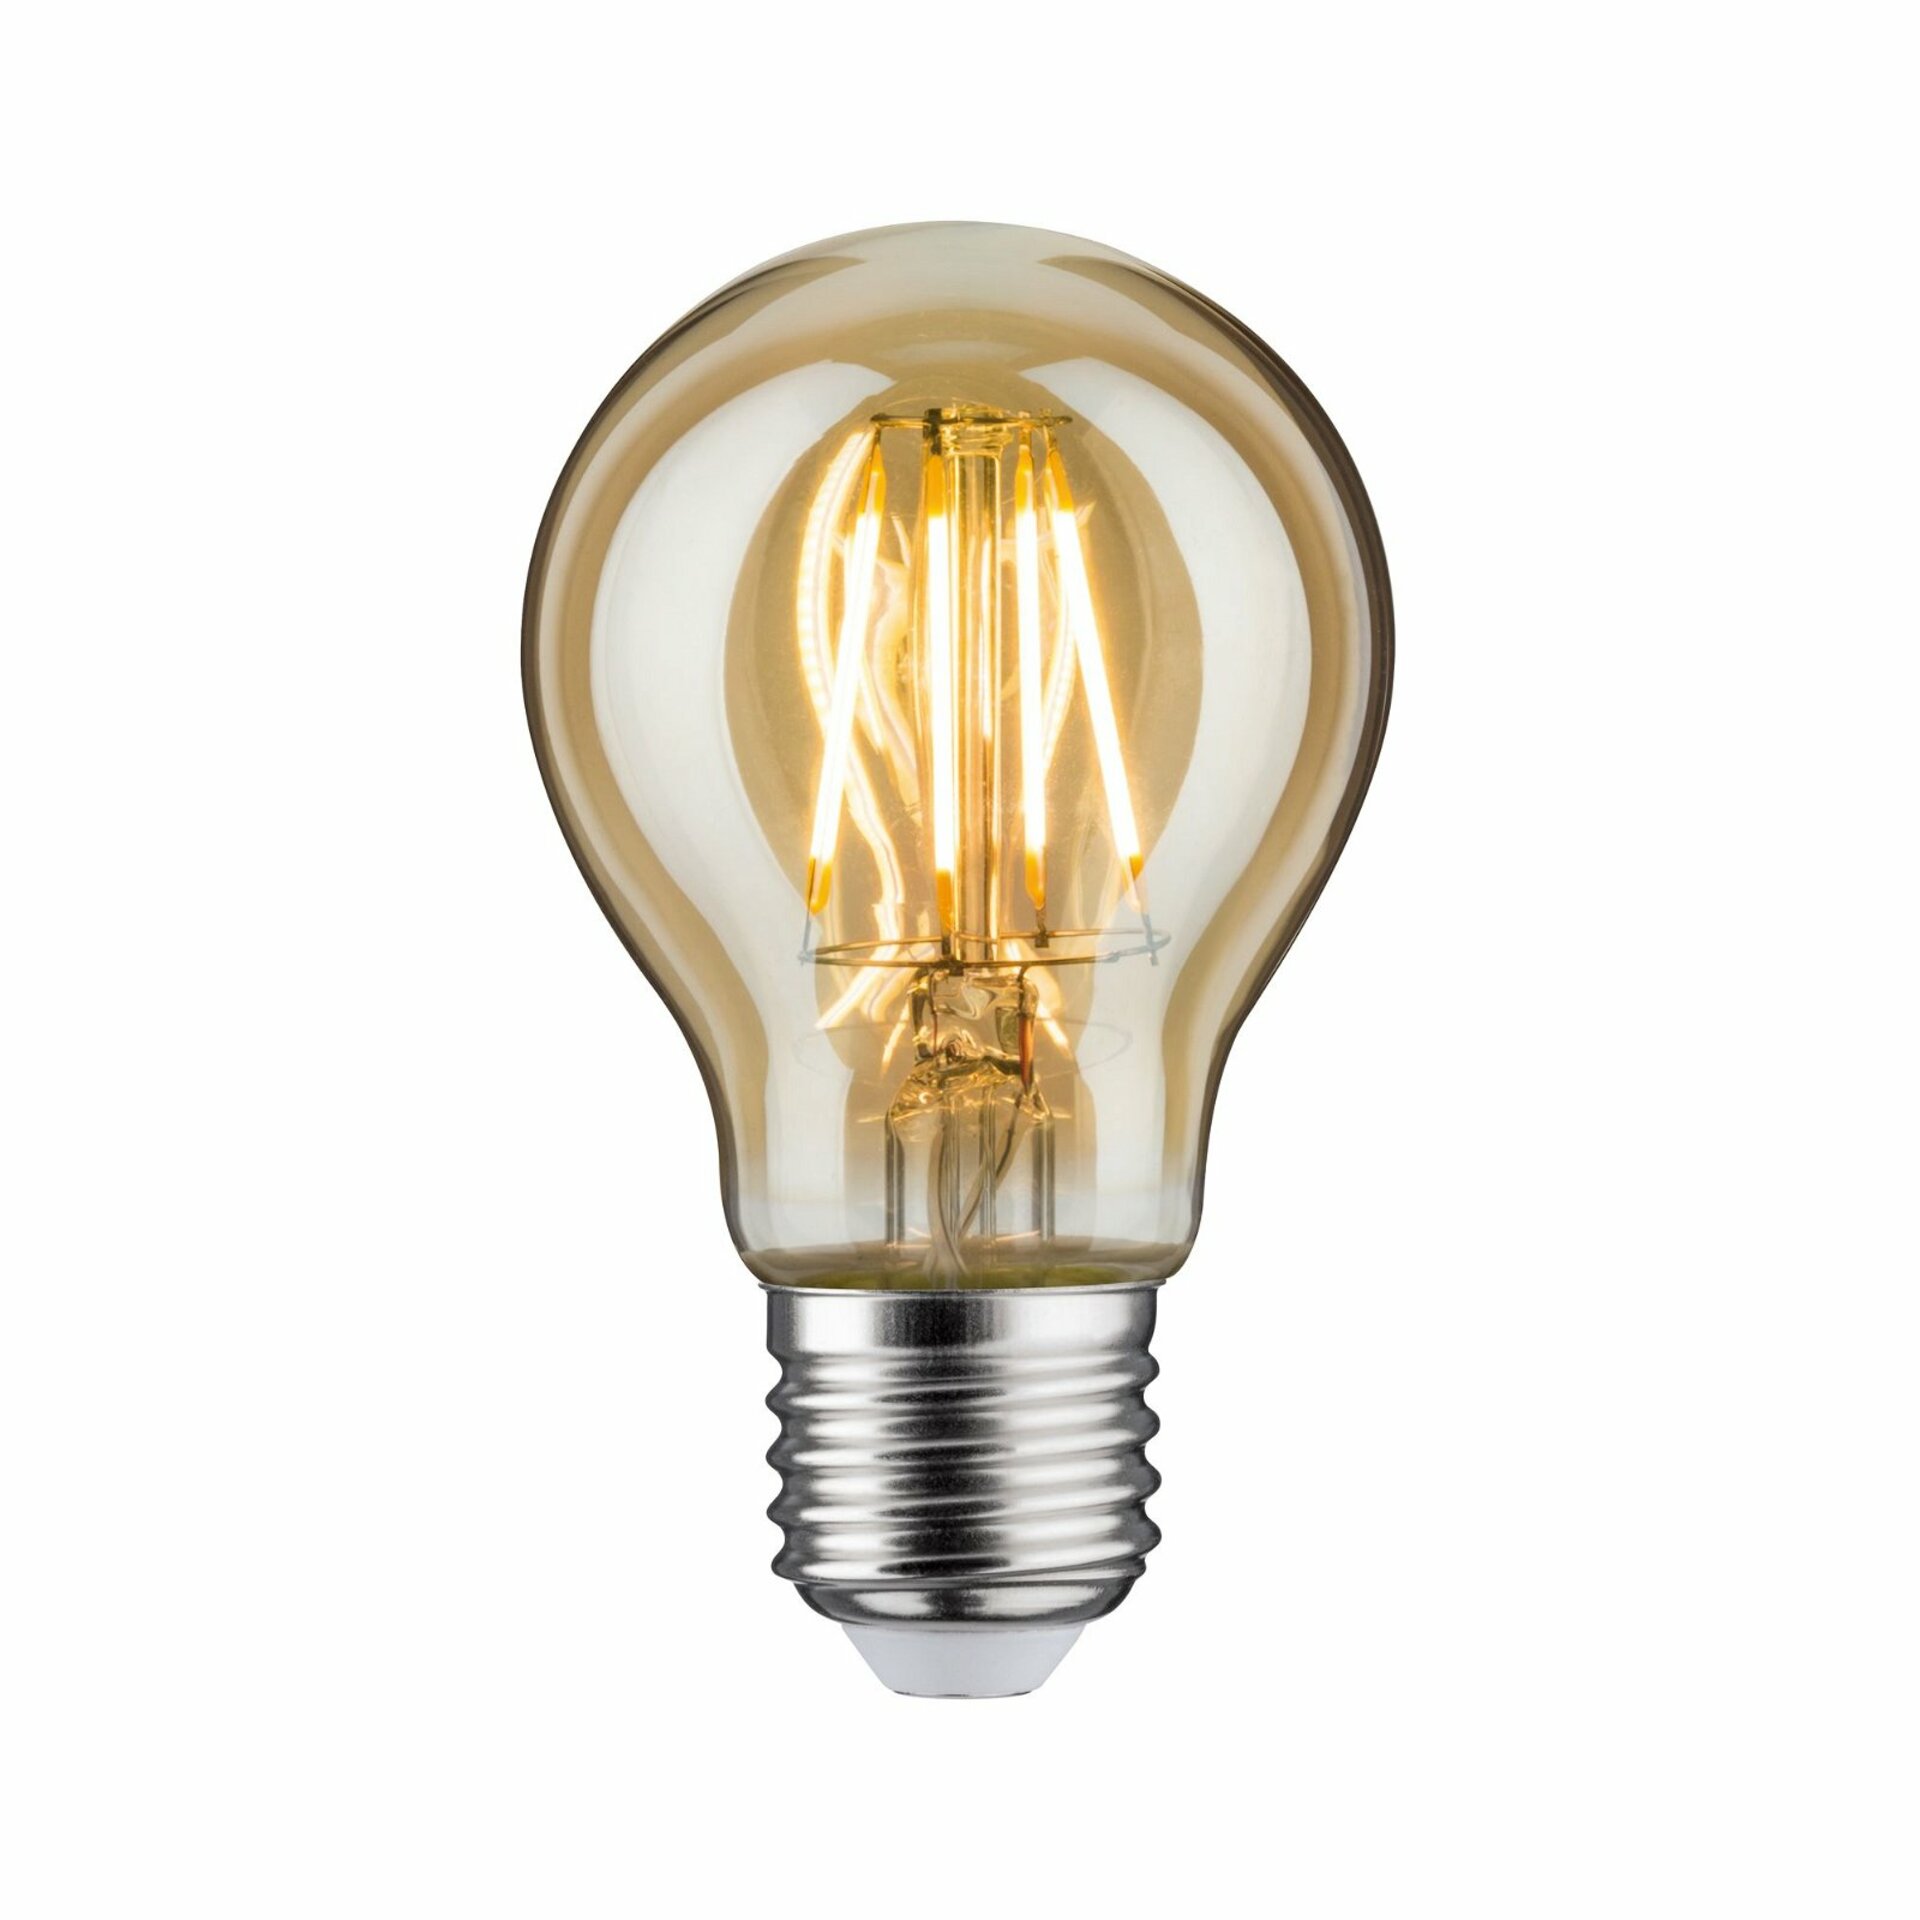 PAULMANN LED žárovka 6,5 W E27 zlatá zlaté světlo 287.15